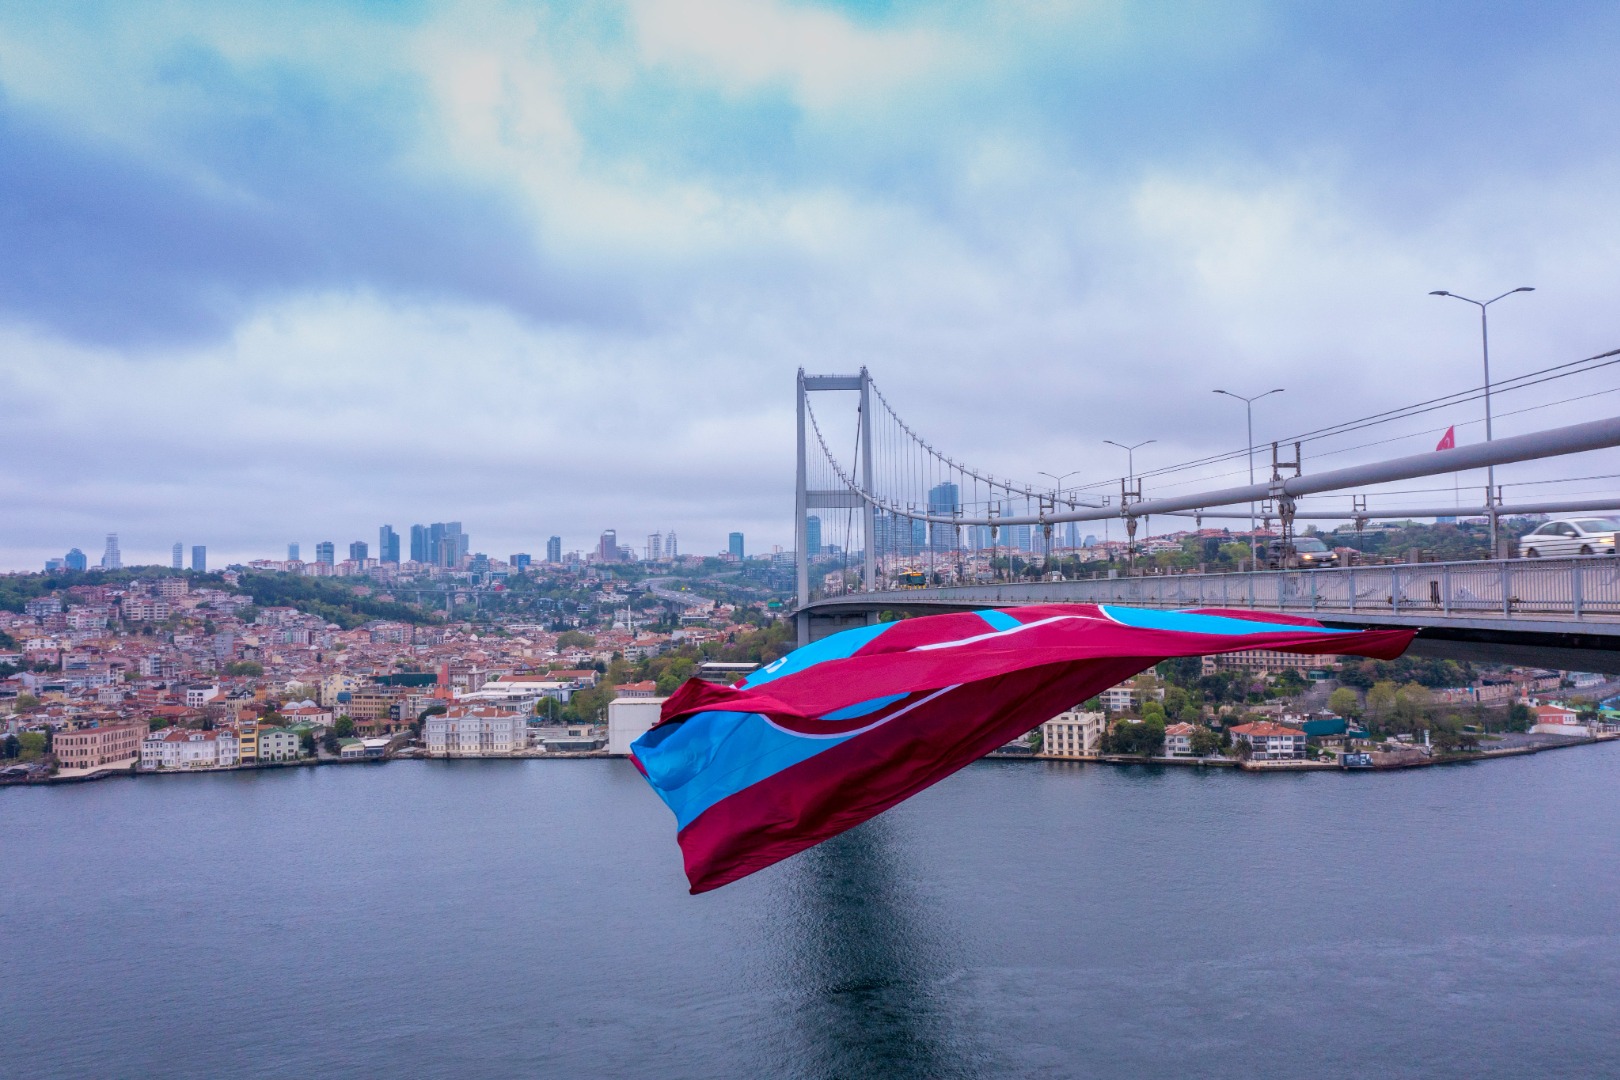 Dev Trabzonspor bayrağı 15 Temmuz Şehitler Köprüsü’ne asıldı